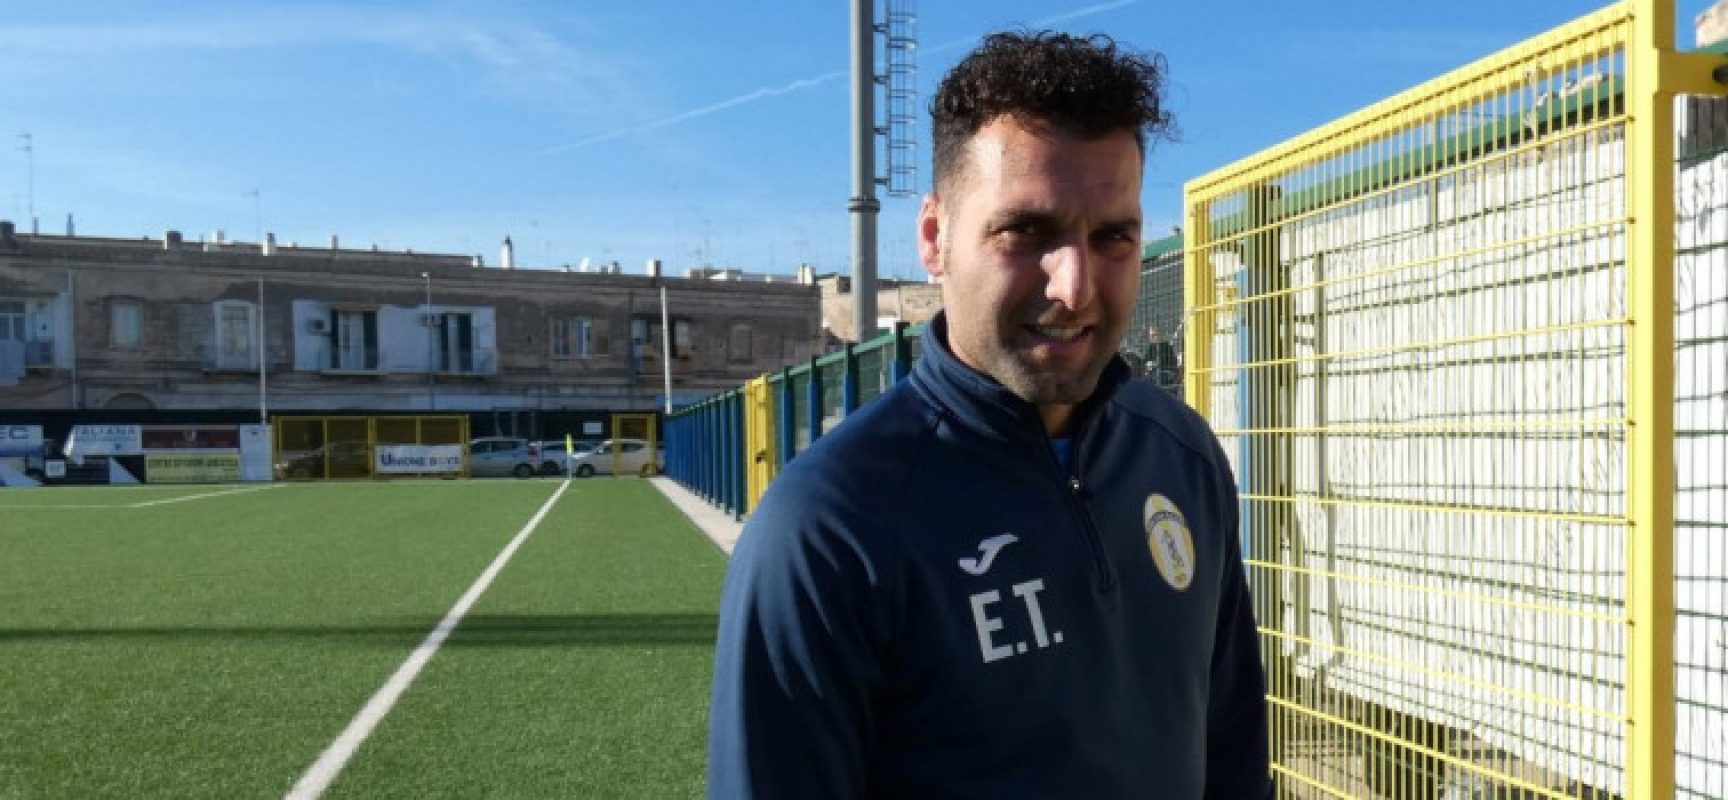 Il Don Uva Calcio lavora a casa, Emanuele Troilo: “Ora partita più importante da vincere”